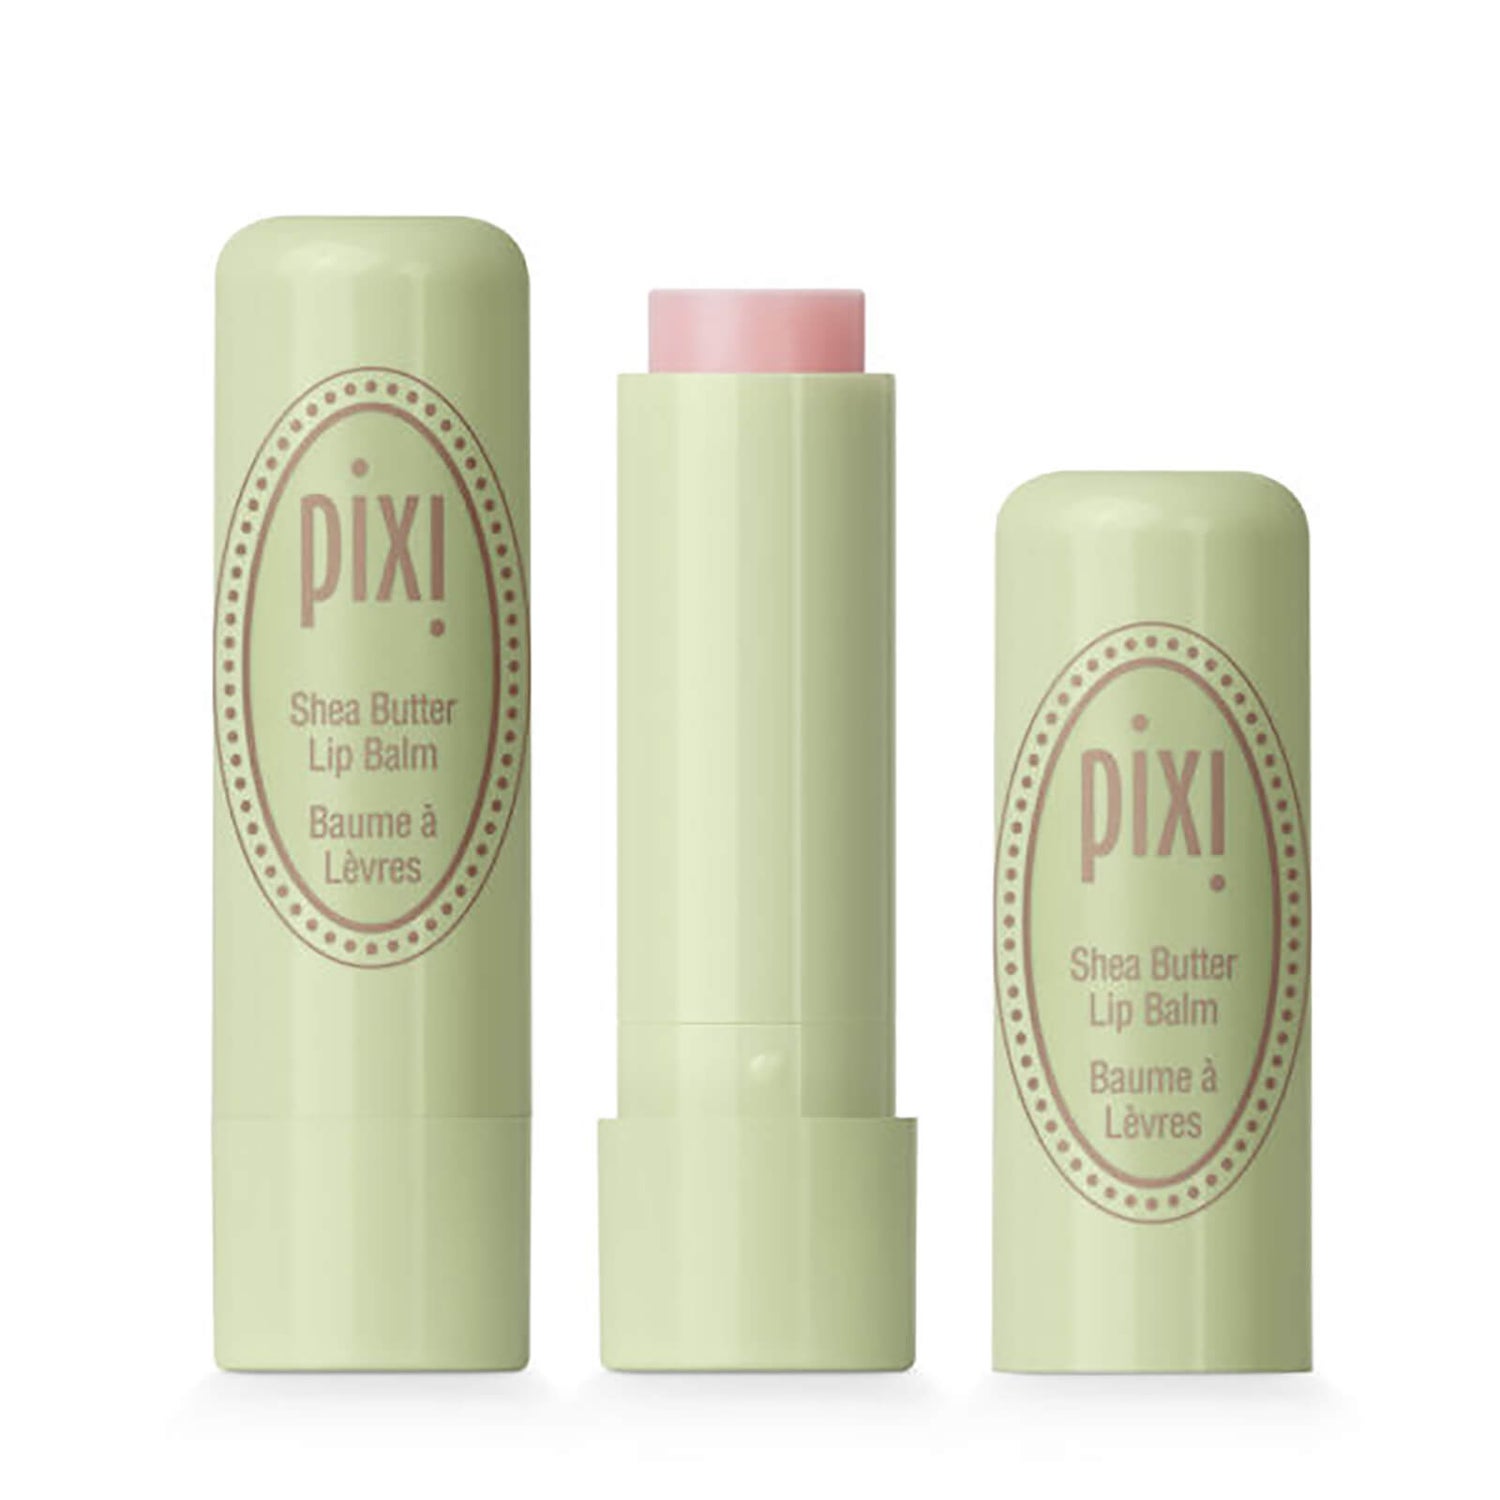 PIXI Shea Butter Lip Balm - Comfort Clear